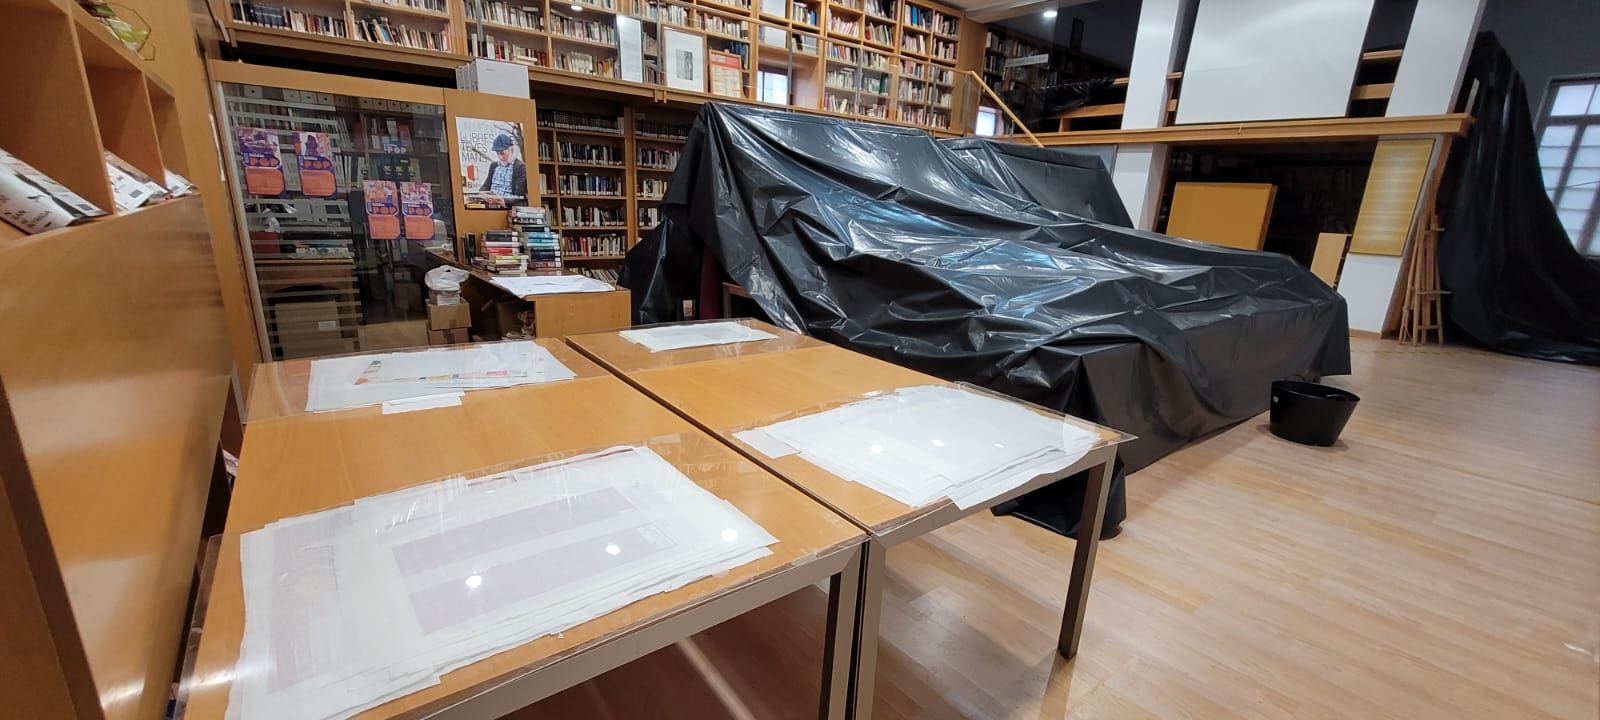 Las lluvias causan filtraciones y goteras en la biblioteca pública de Aielo de Malferit